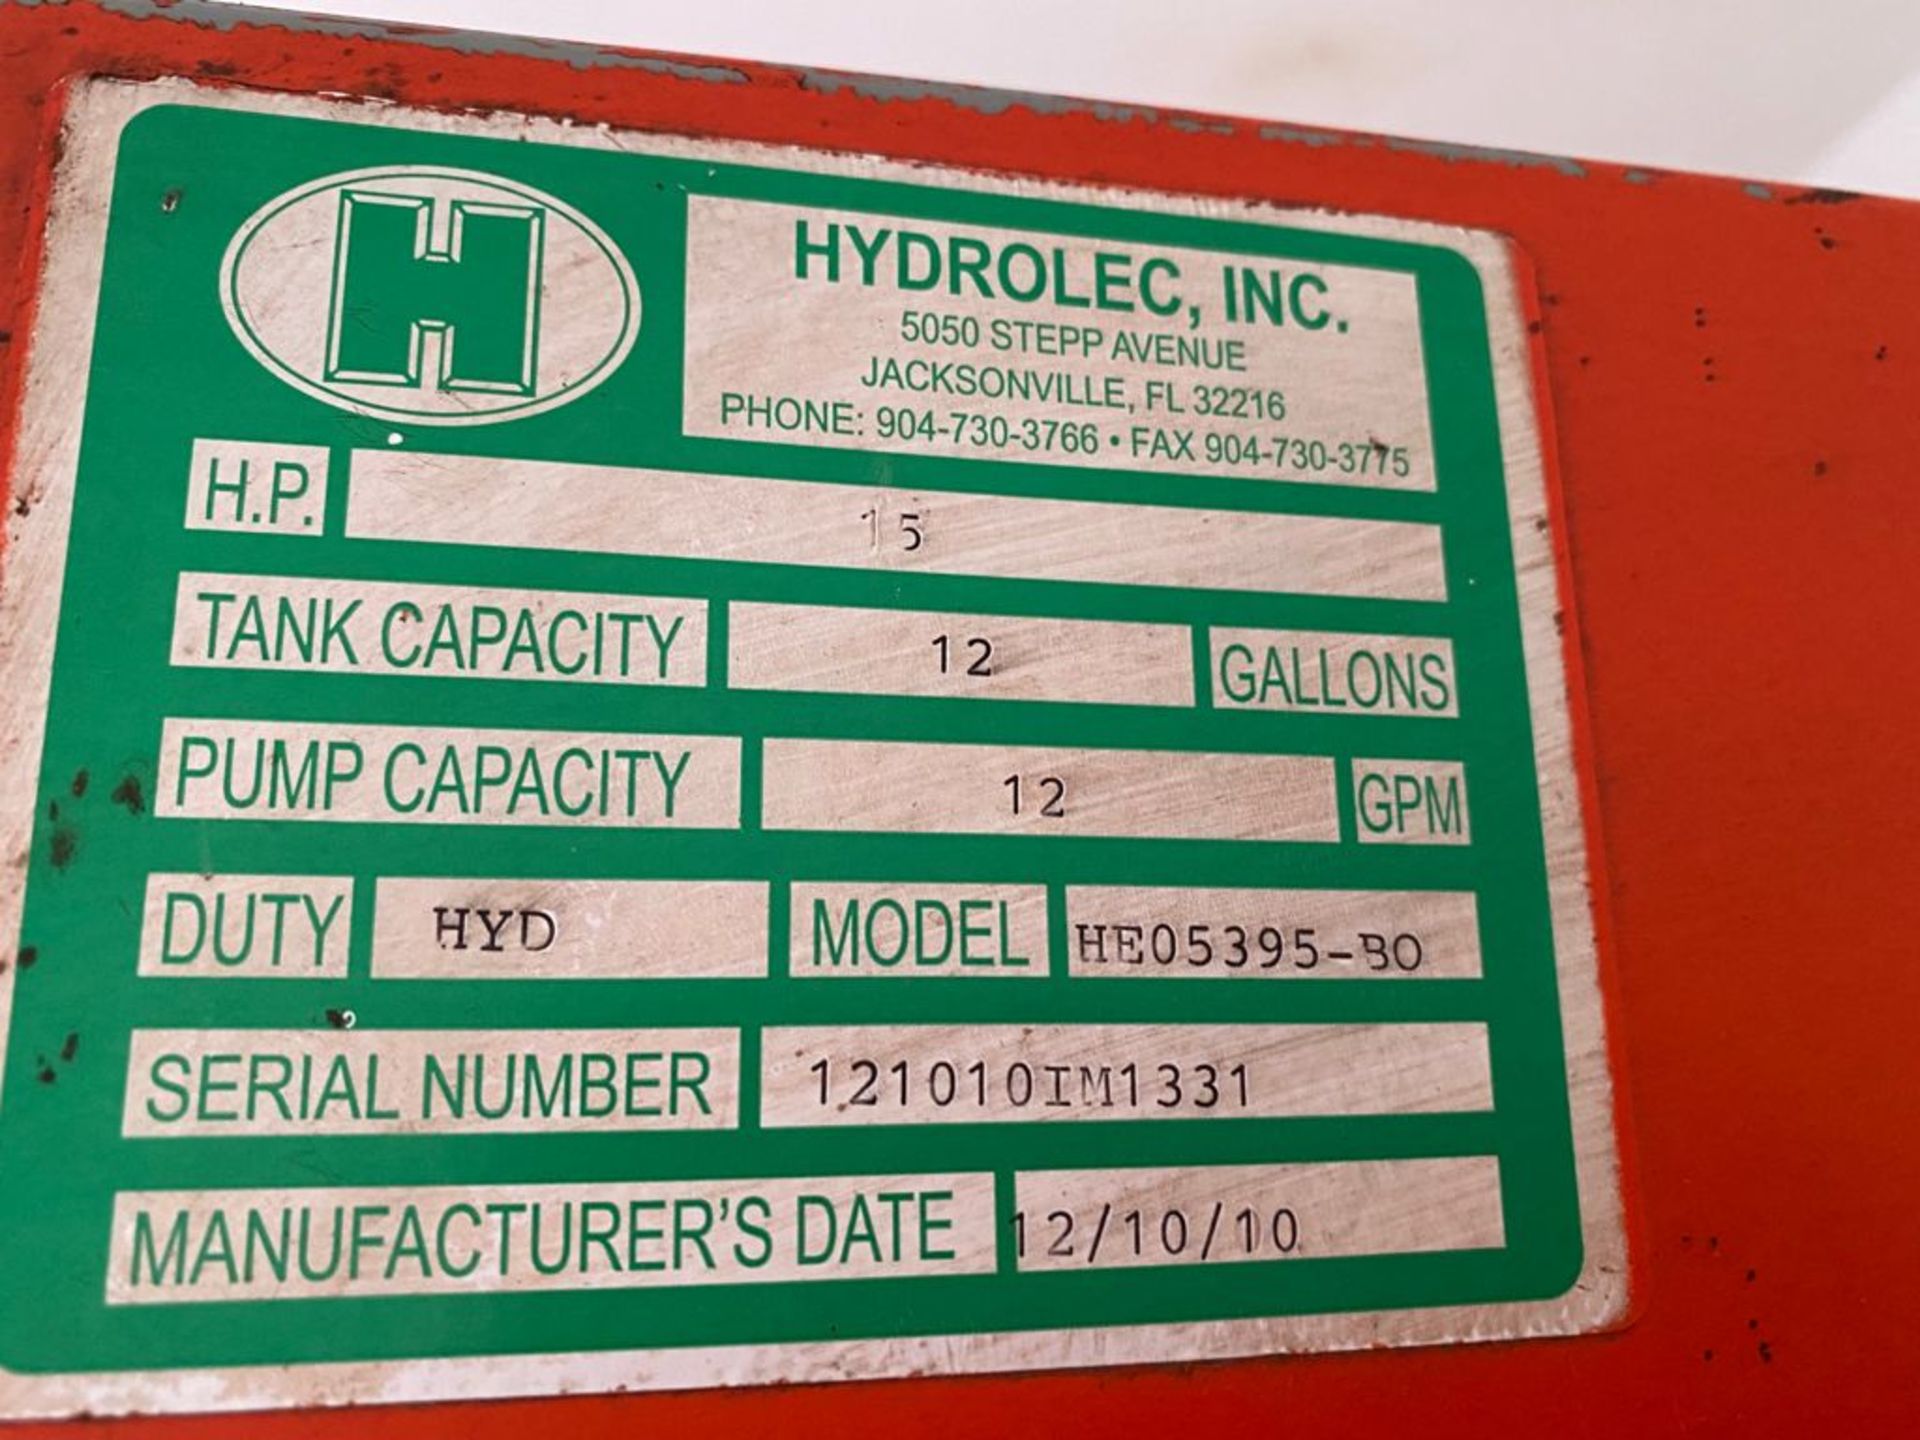 1 Prensa compactadora de cartón marca Hydrolec, modelo HE05395-BO, No de serie 121010im1331 - Image 15 of 16